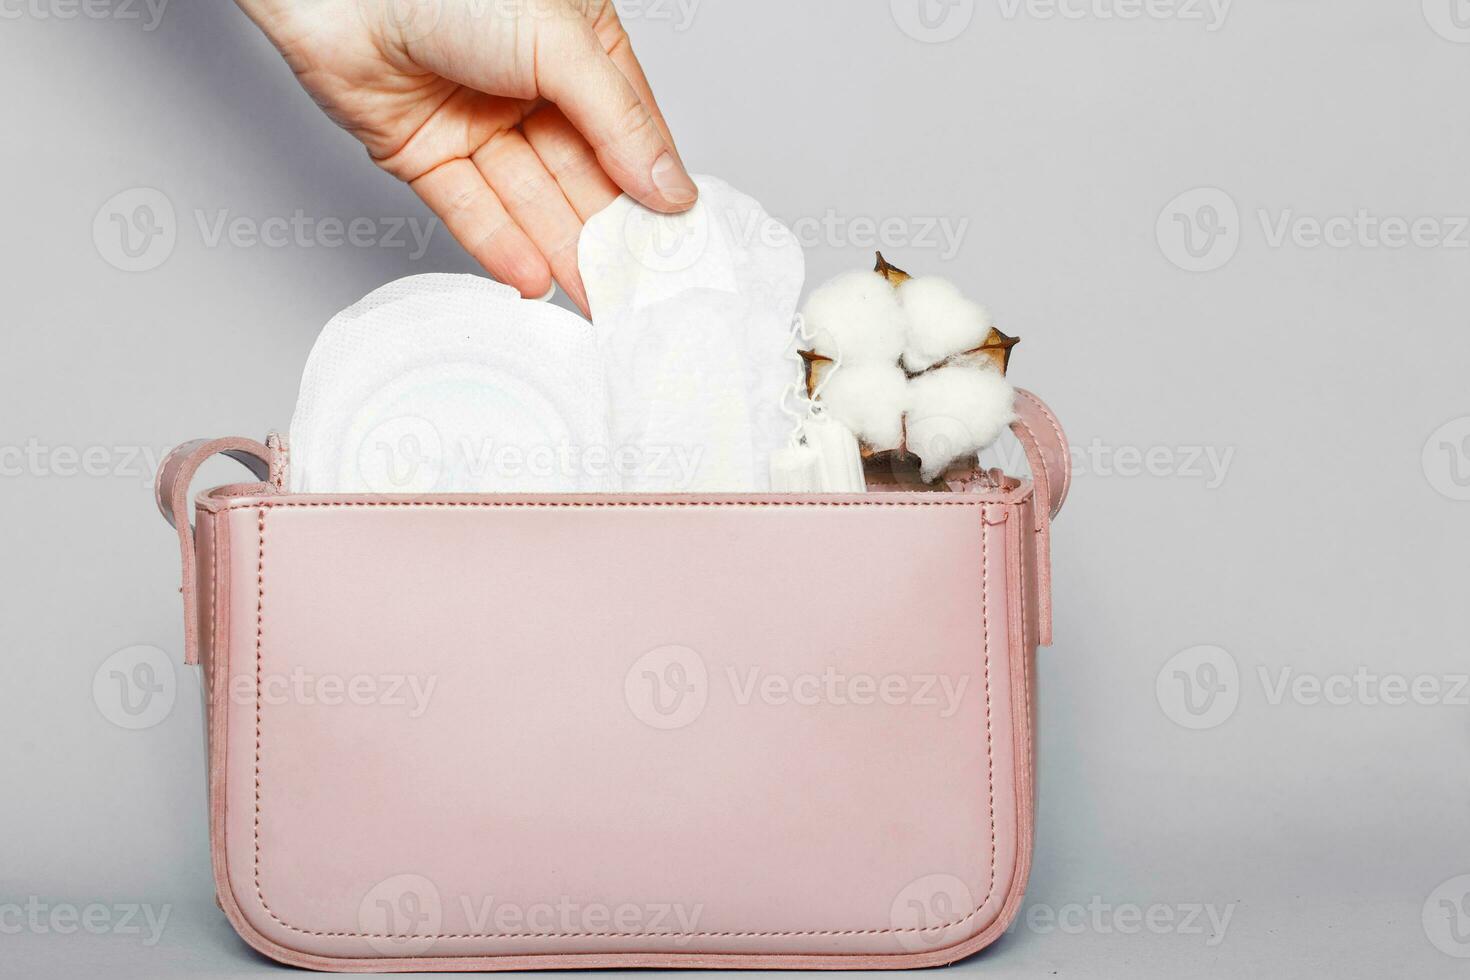 mano de mujer saca panty liner de bolsa de cosméticos rosa con tampones y toallas sanitarias femeninas foto